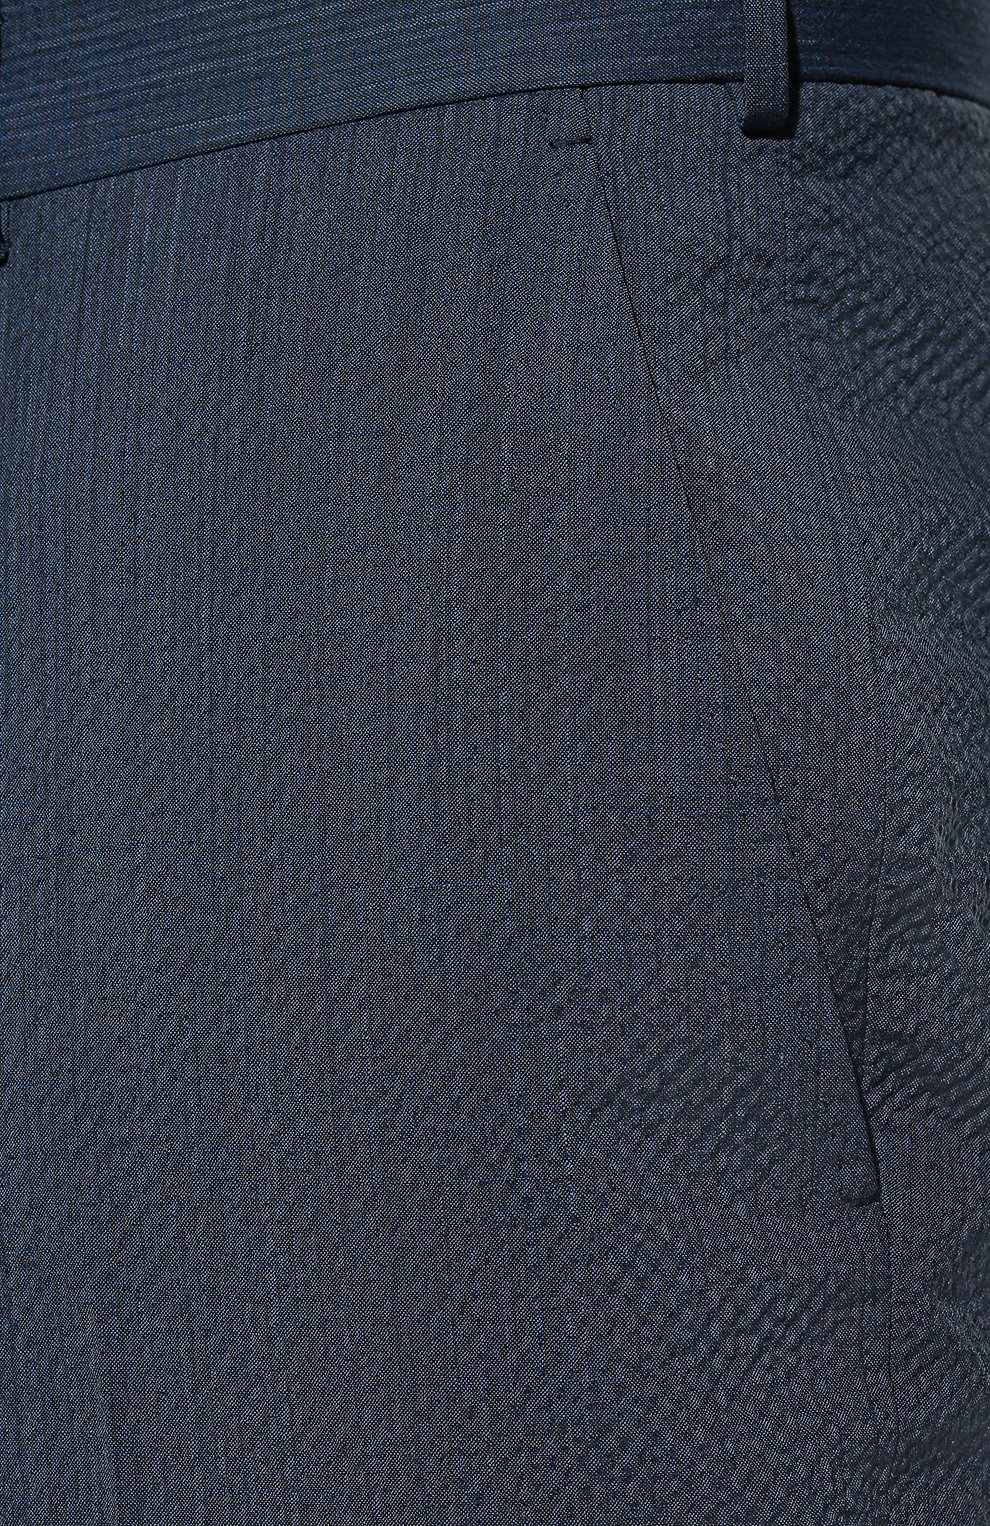 Мужские брюки из шерсти и шелка ERMENEGILDO ZEGNA синего цвета, арт. 379F01/75TB12 | Фото 5 (Материал внешний: Шерсть; Длина (брюки, джинсы): Стандартные; Стили: Классический; Случай: Формальный; Материал подклада: Вискоза)